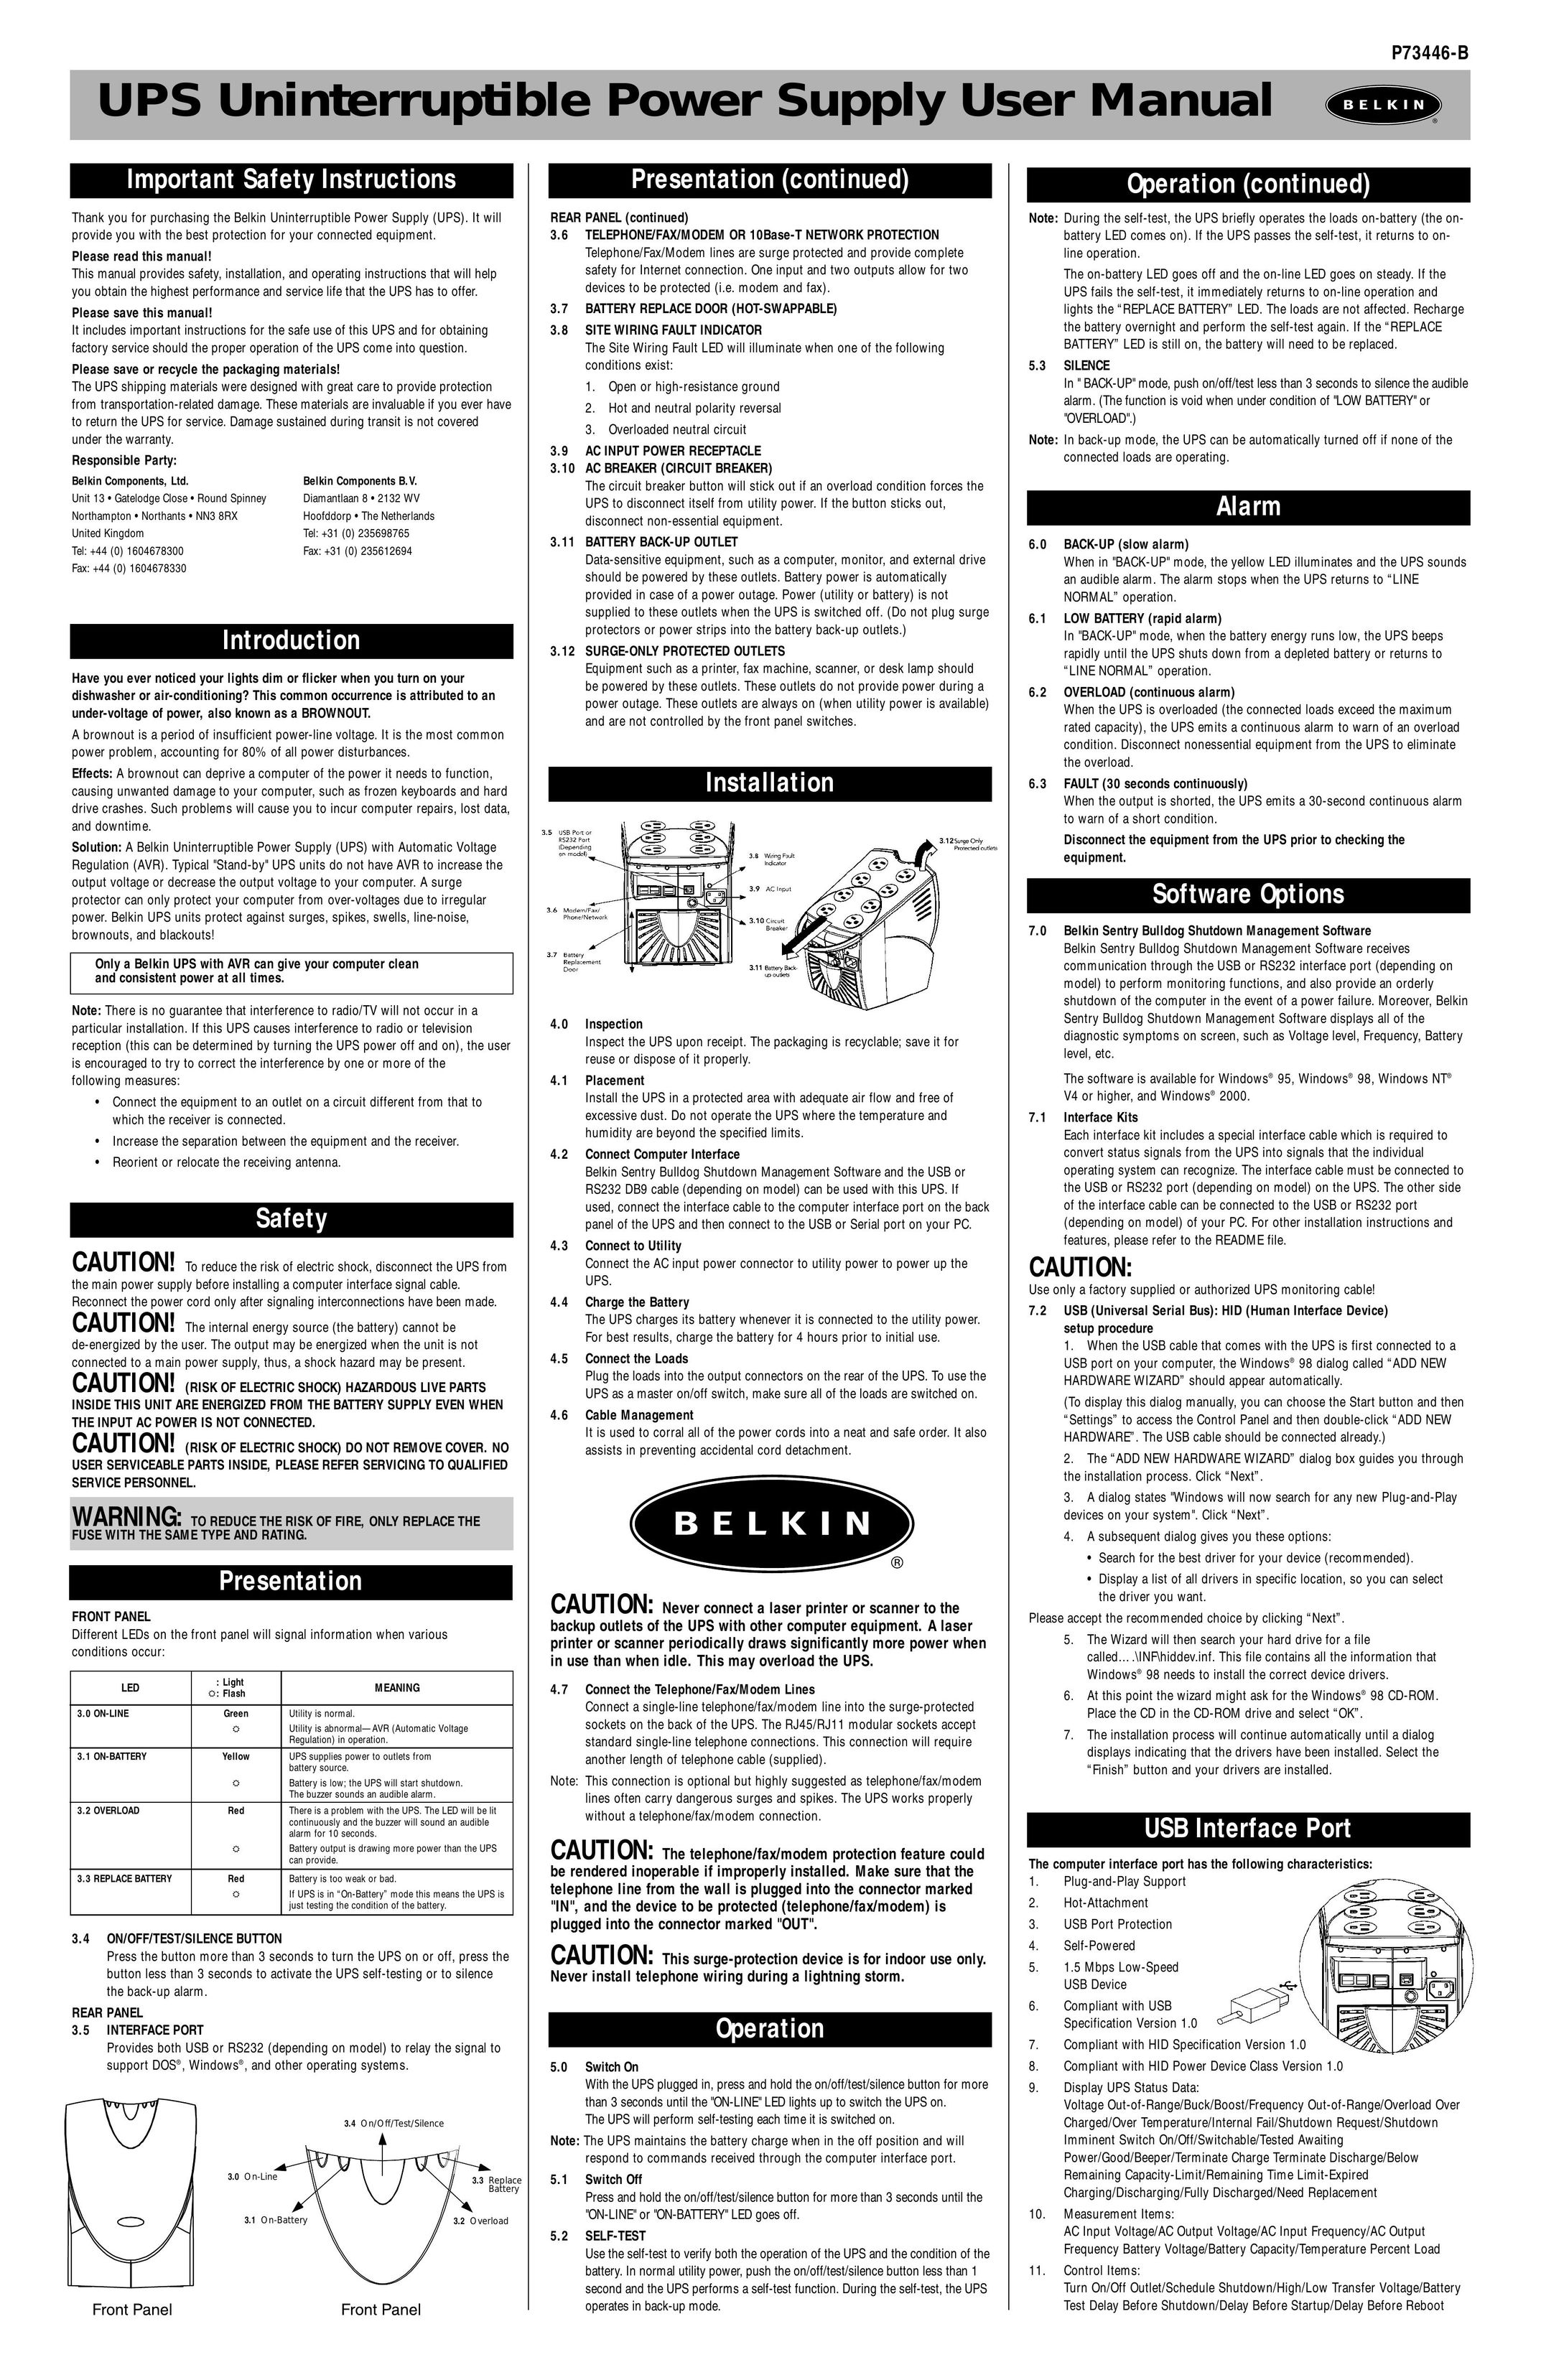 Belkin P73446-B Power Supply User Manual